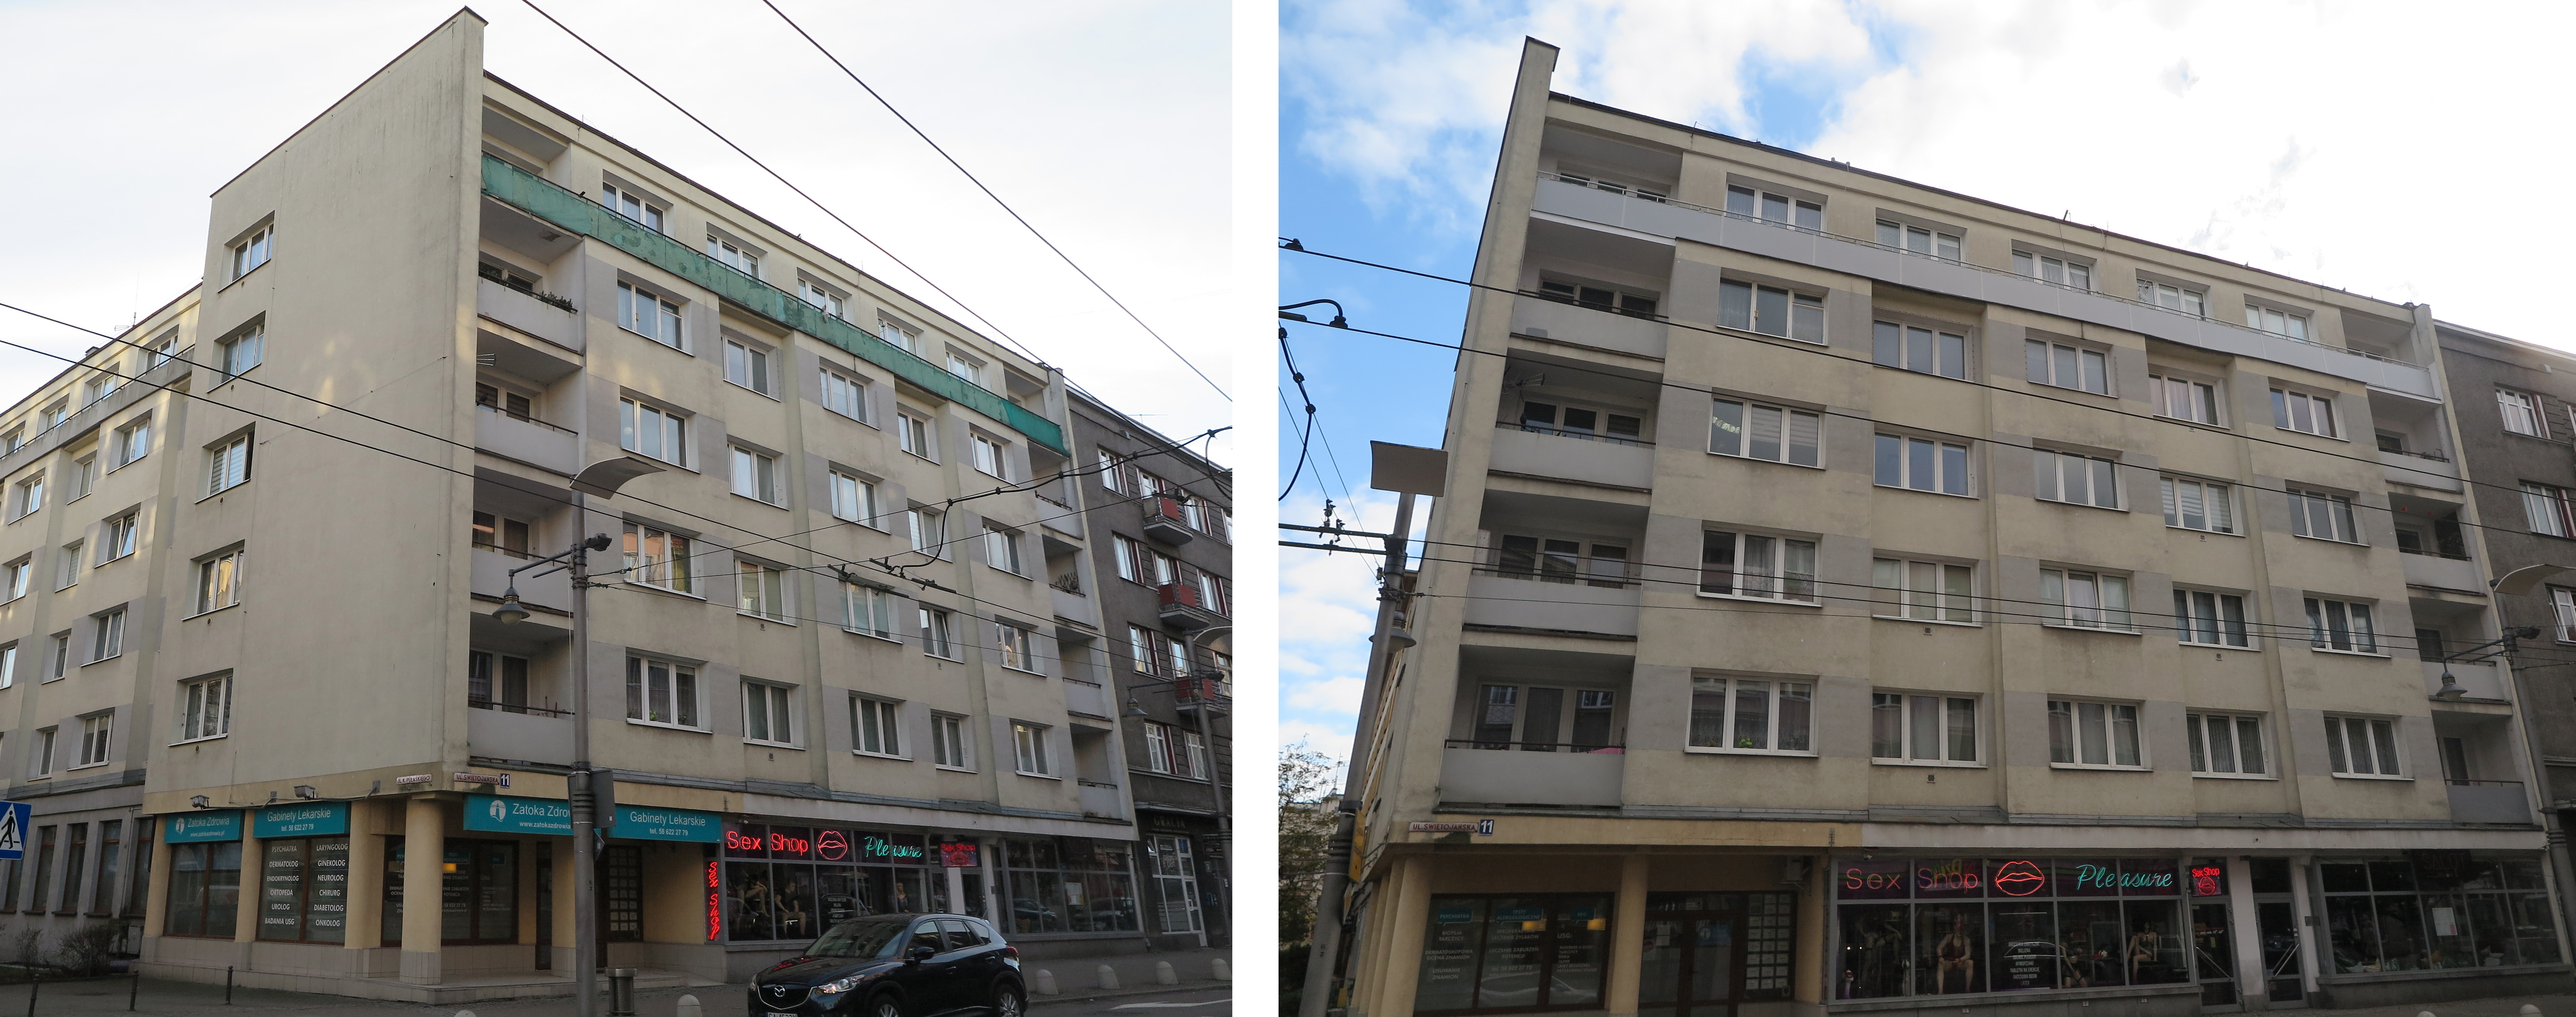 Budynek przed i po remoncie